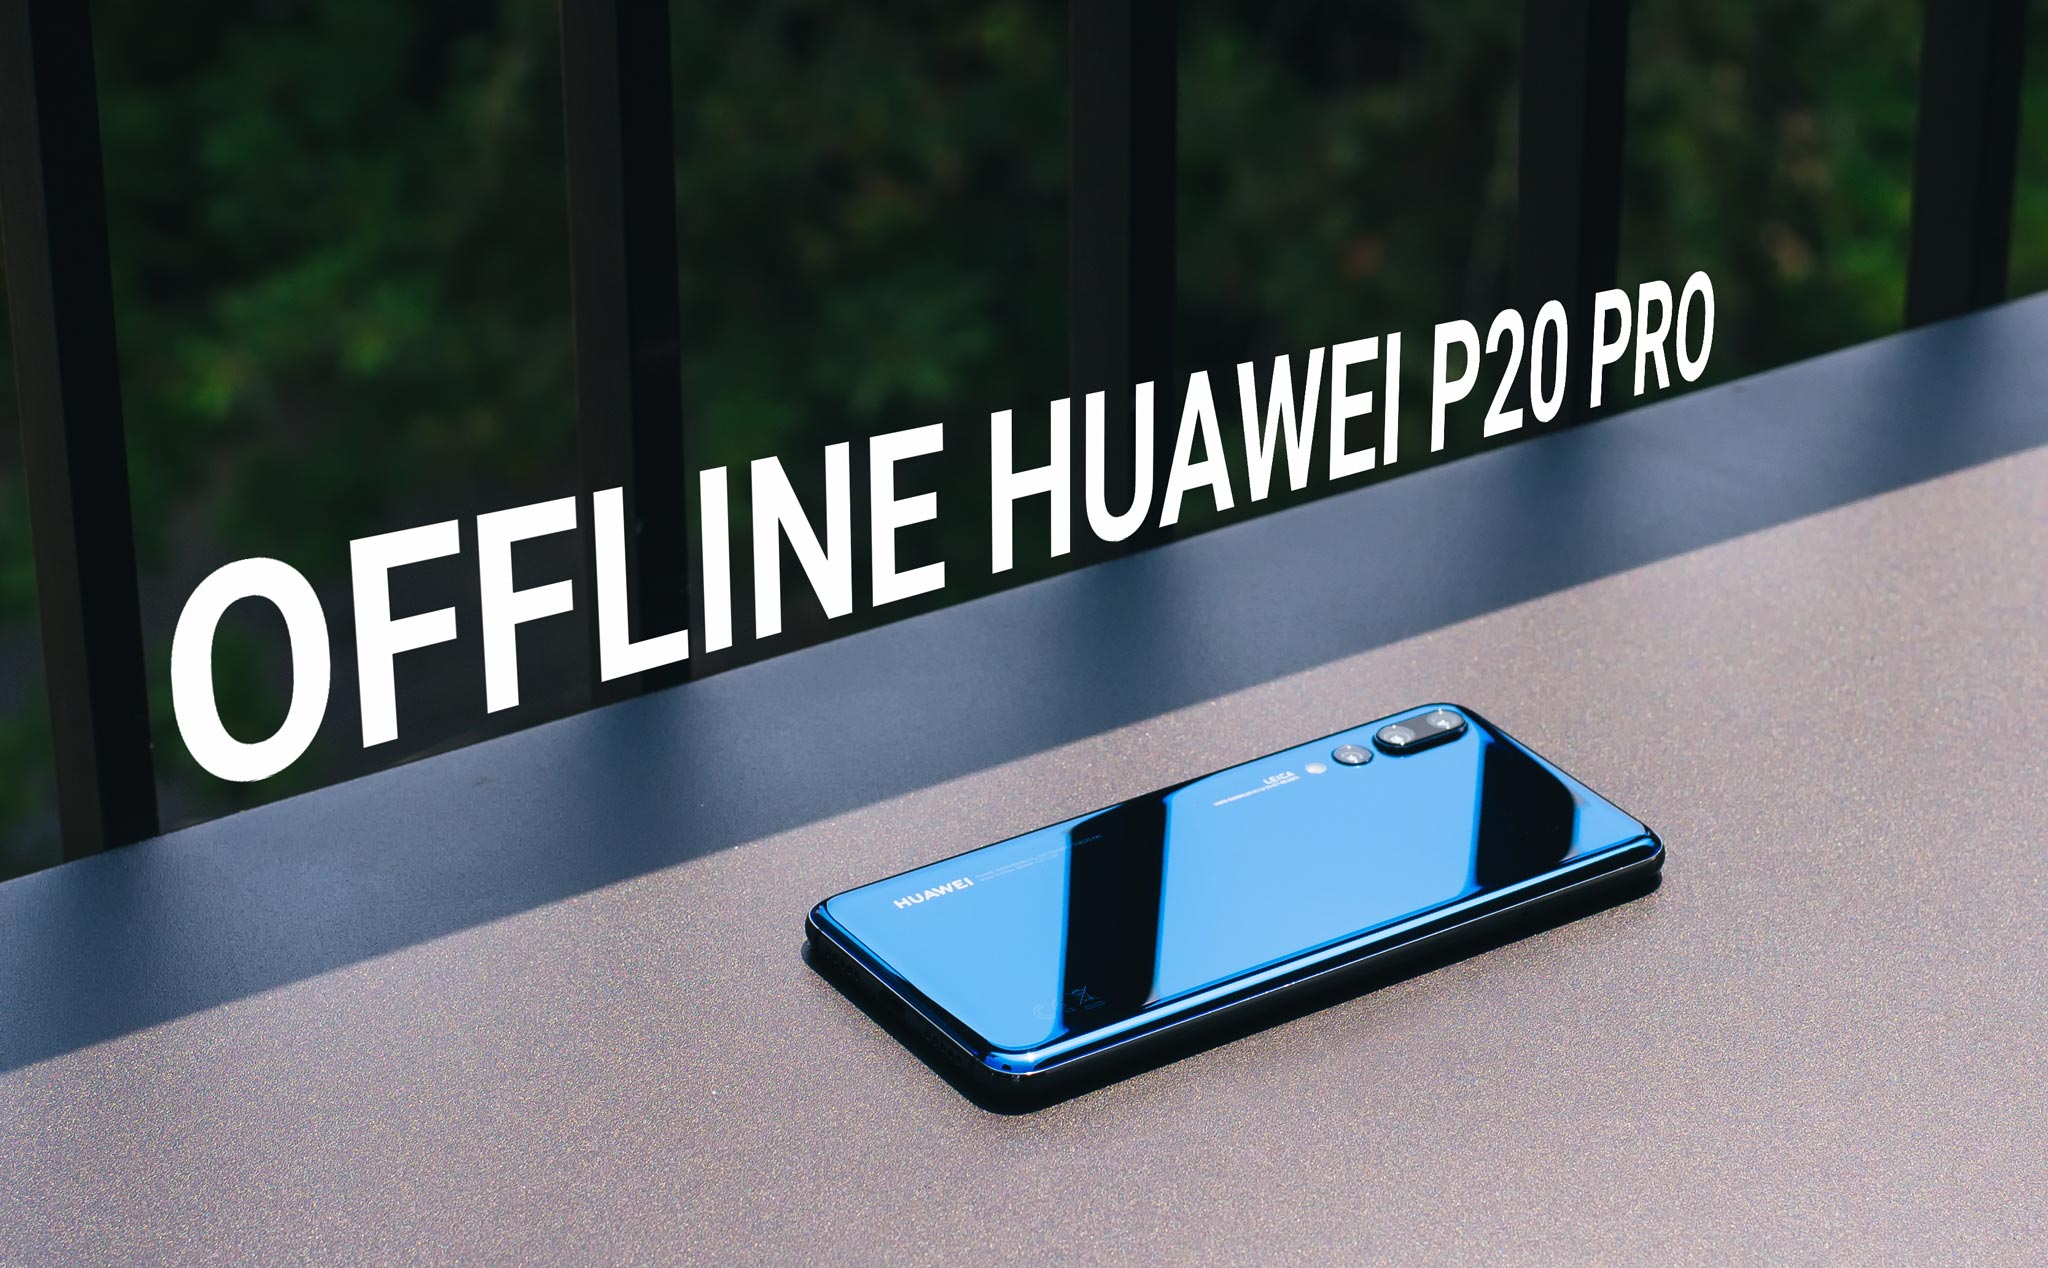 TP.HCM Mời dự offline trải nghiệm Huawei P20 Pro, sáng thứ 7, trúng P20 Pro (update địa điểm)